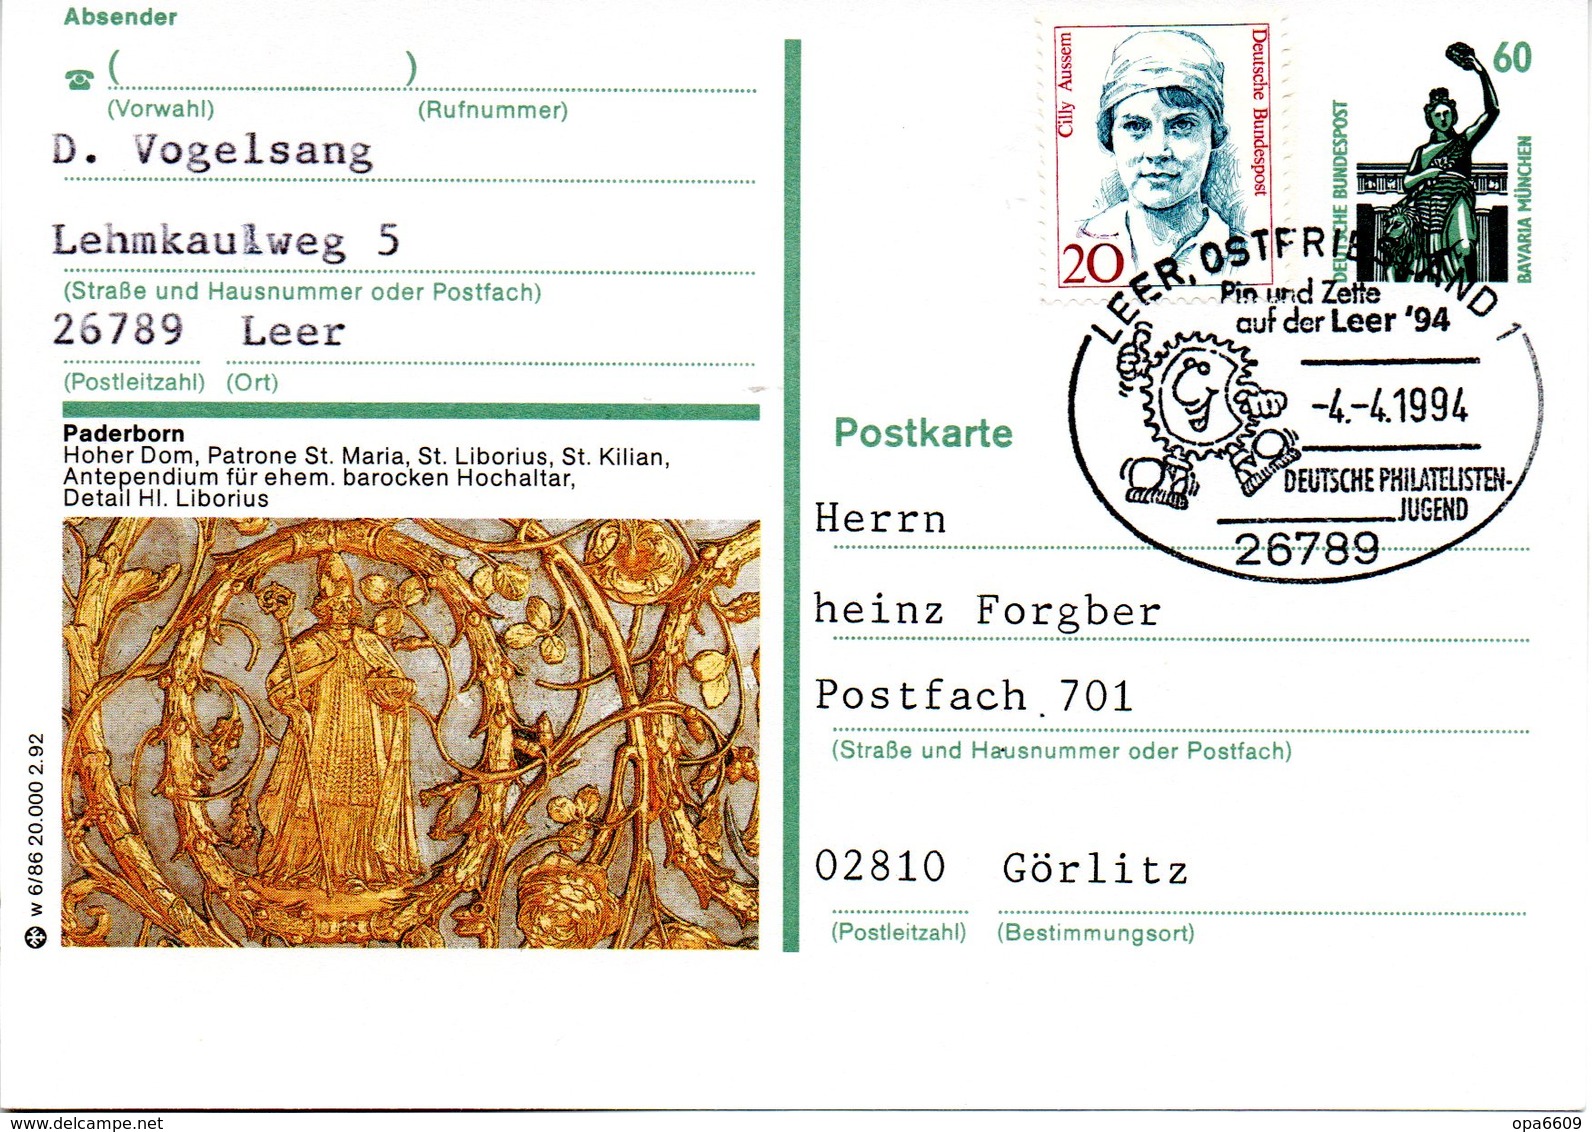 BRD Bildpostkarte 60 Pf.WSt.Sehenswürdigkeiten Bavaria München P139 W 6/86 ZF "Paderborn" SST 4.4.94 LEER, OSTFRIESLAND - Geïllustreerde Postkaarten - Gebruikt